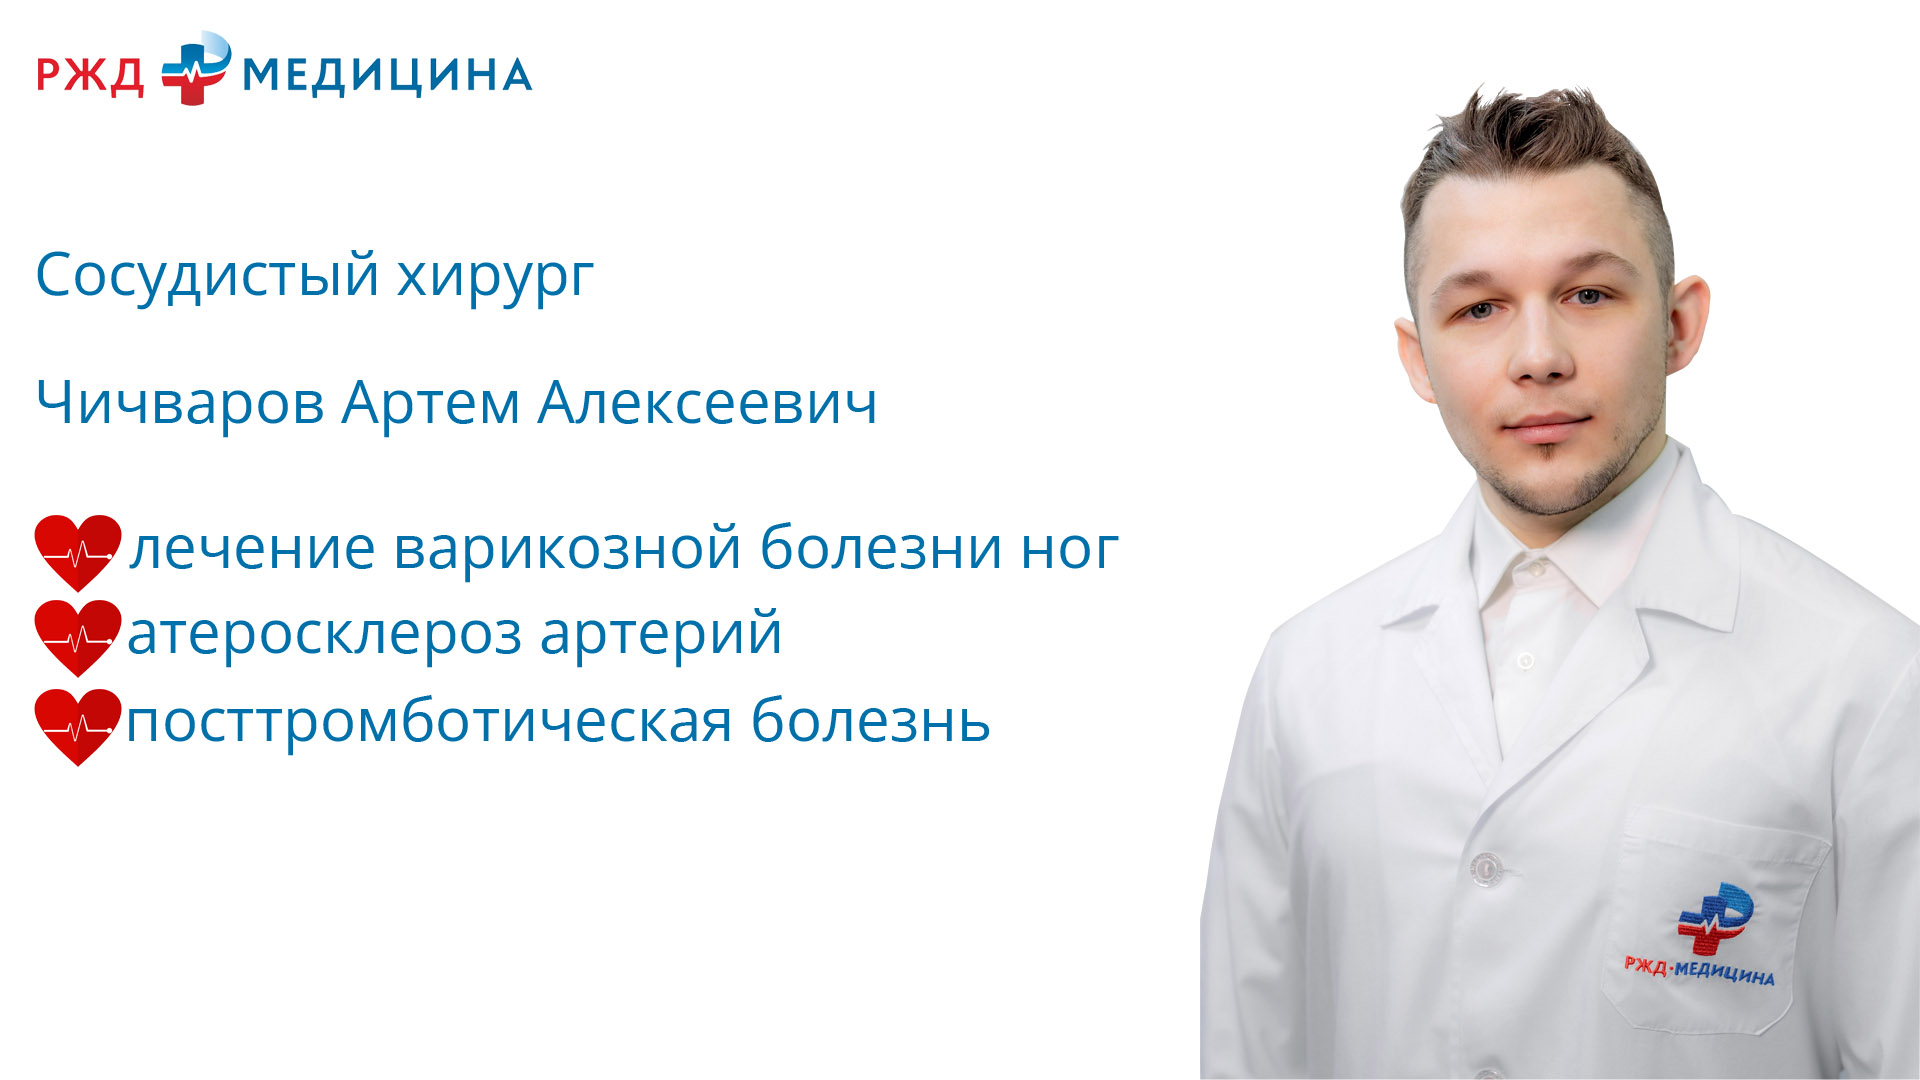 Клиника доктора Есиповой. РЖД медицина диагноз.